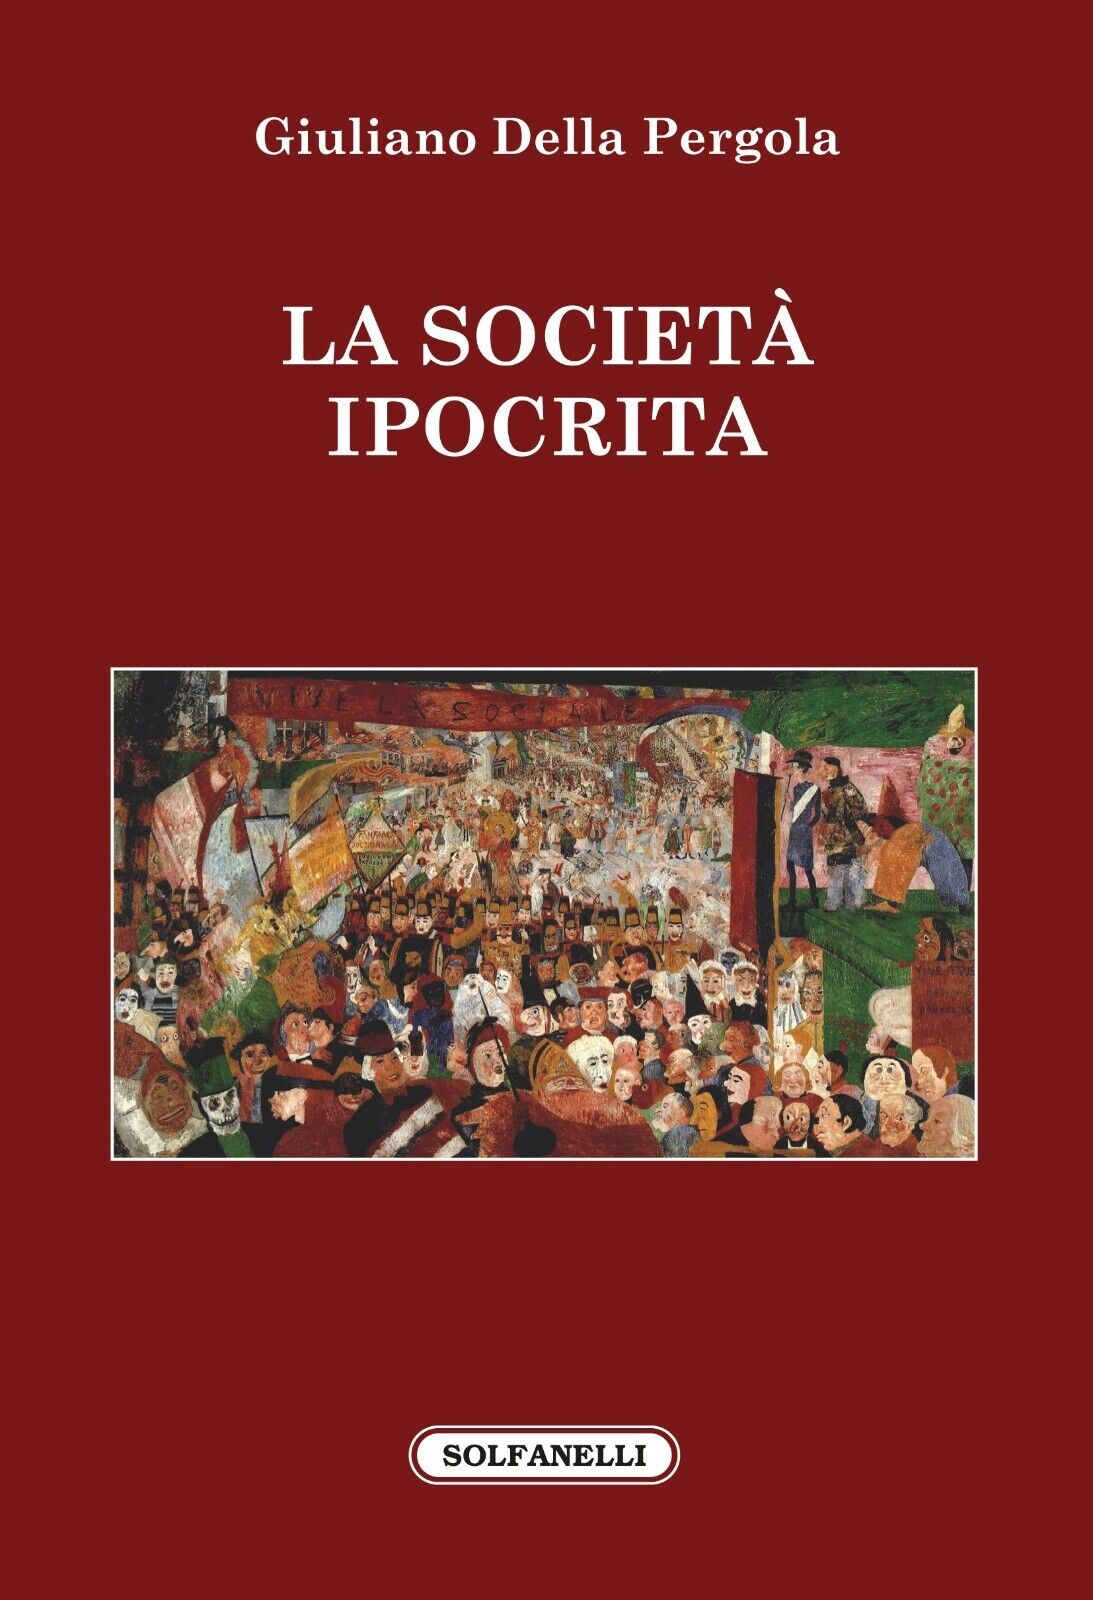 La societ? ipocrita di Giuliano Della Pergola, 2018, Solfanelli